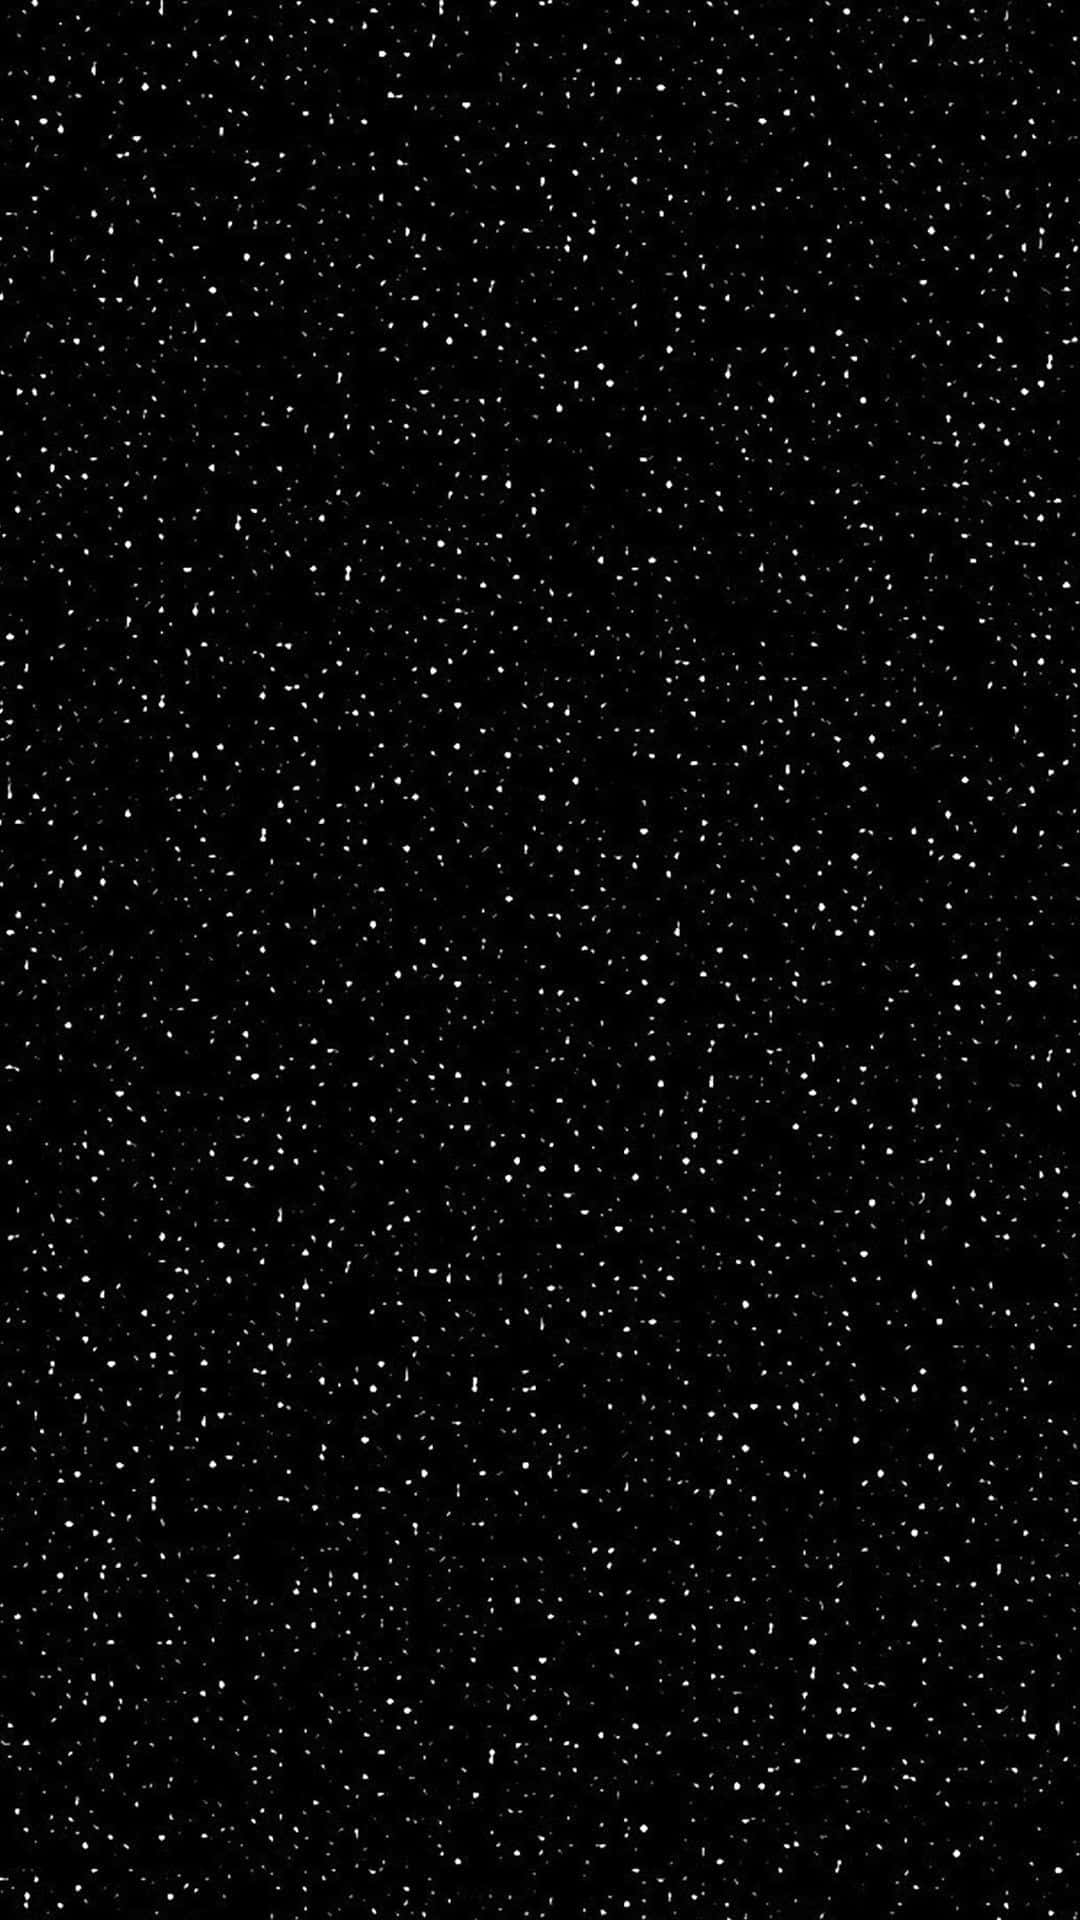 Cielooscuro Hipnotizante Con Estrellas Y La Vía Láctea Fondo de pantalla